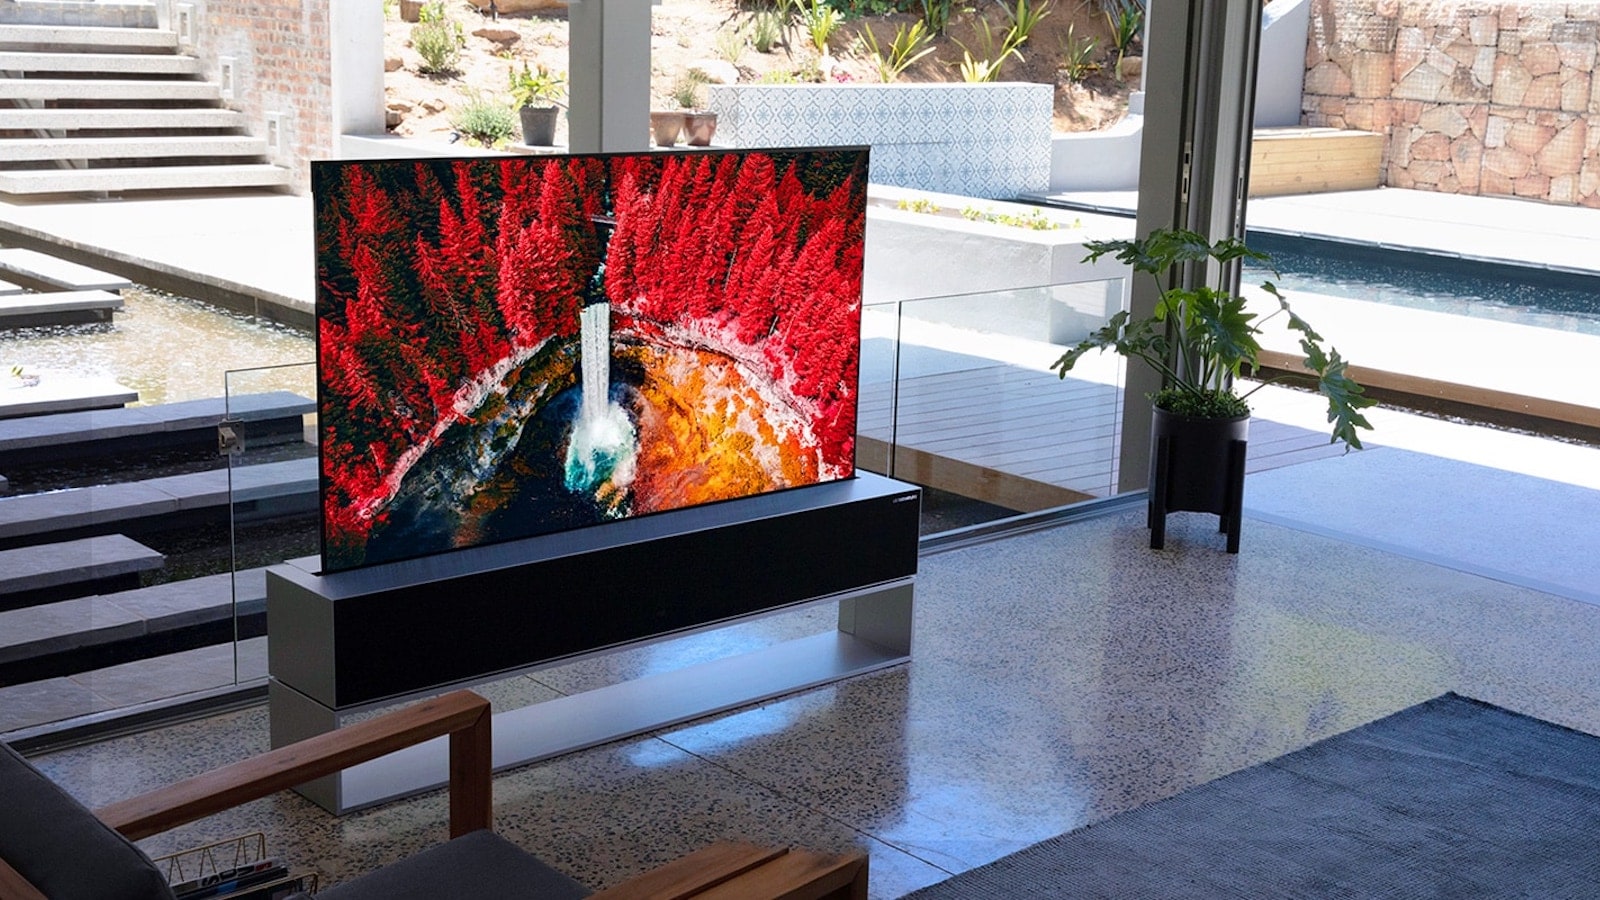 LG OLED: ¿Cómo se ha posicionado como el televisor del futuro?